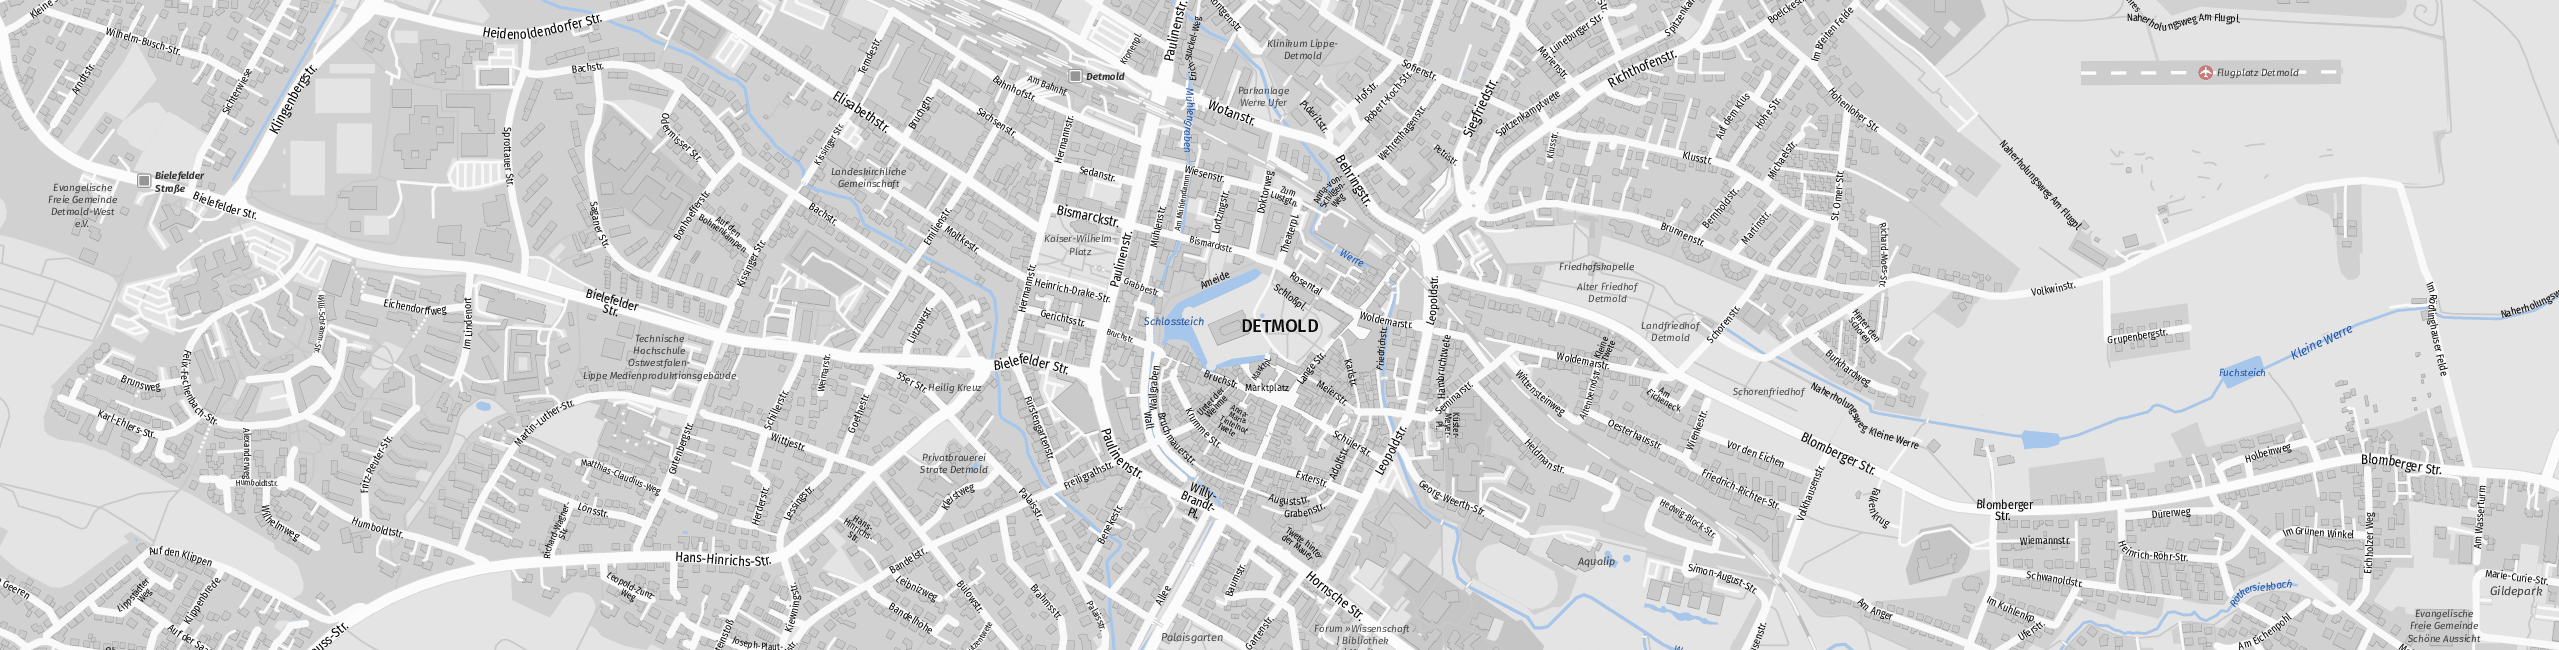 Stadtplan Detmold zum Downloaden.